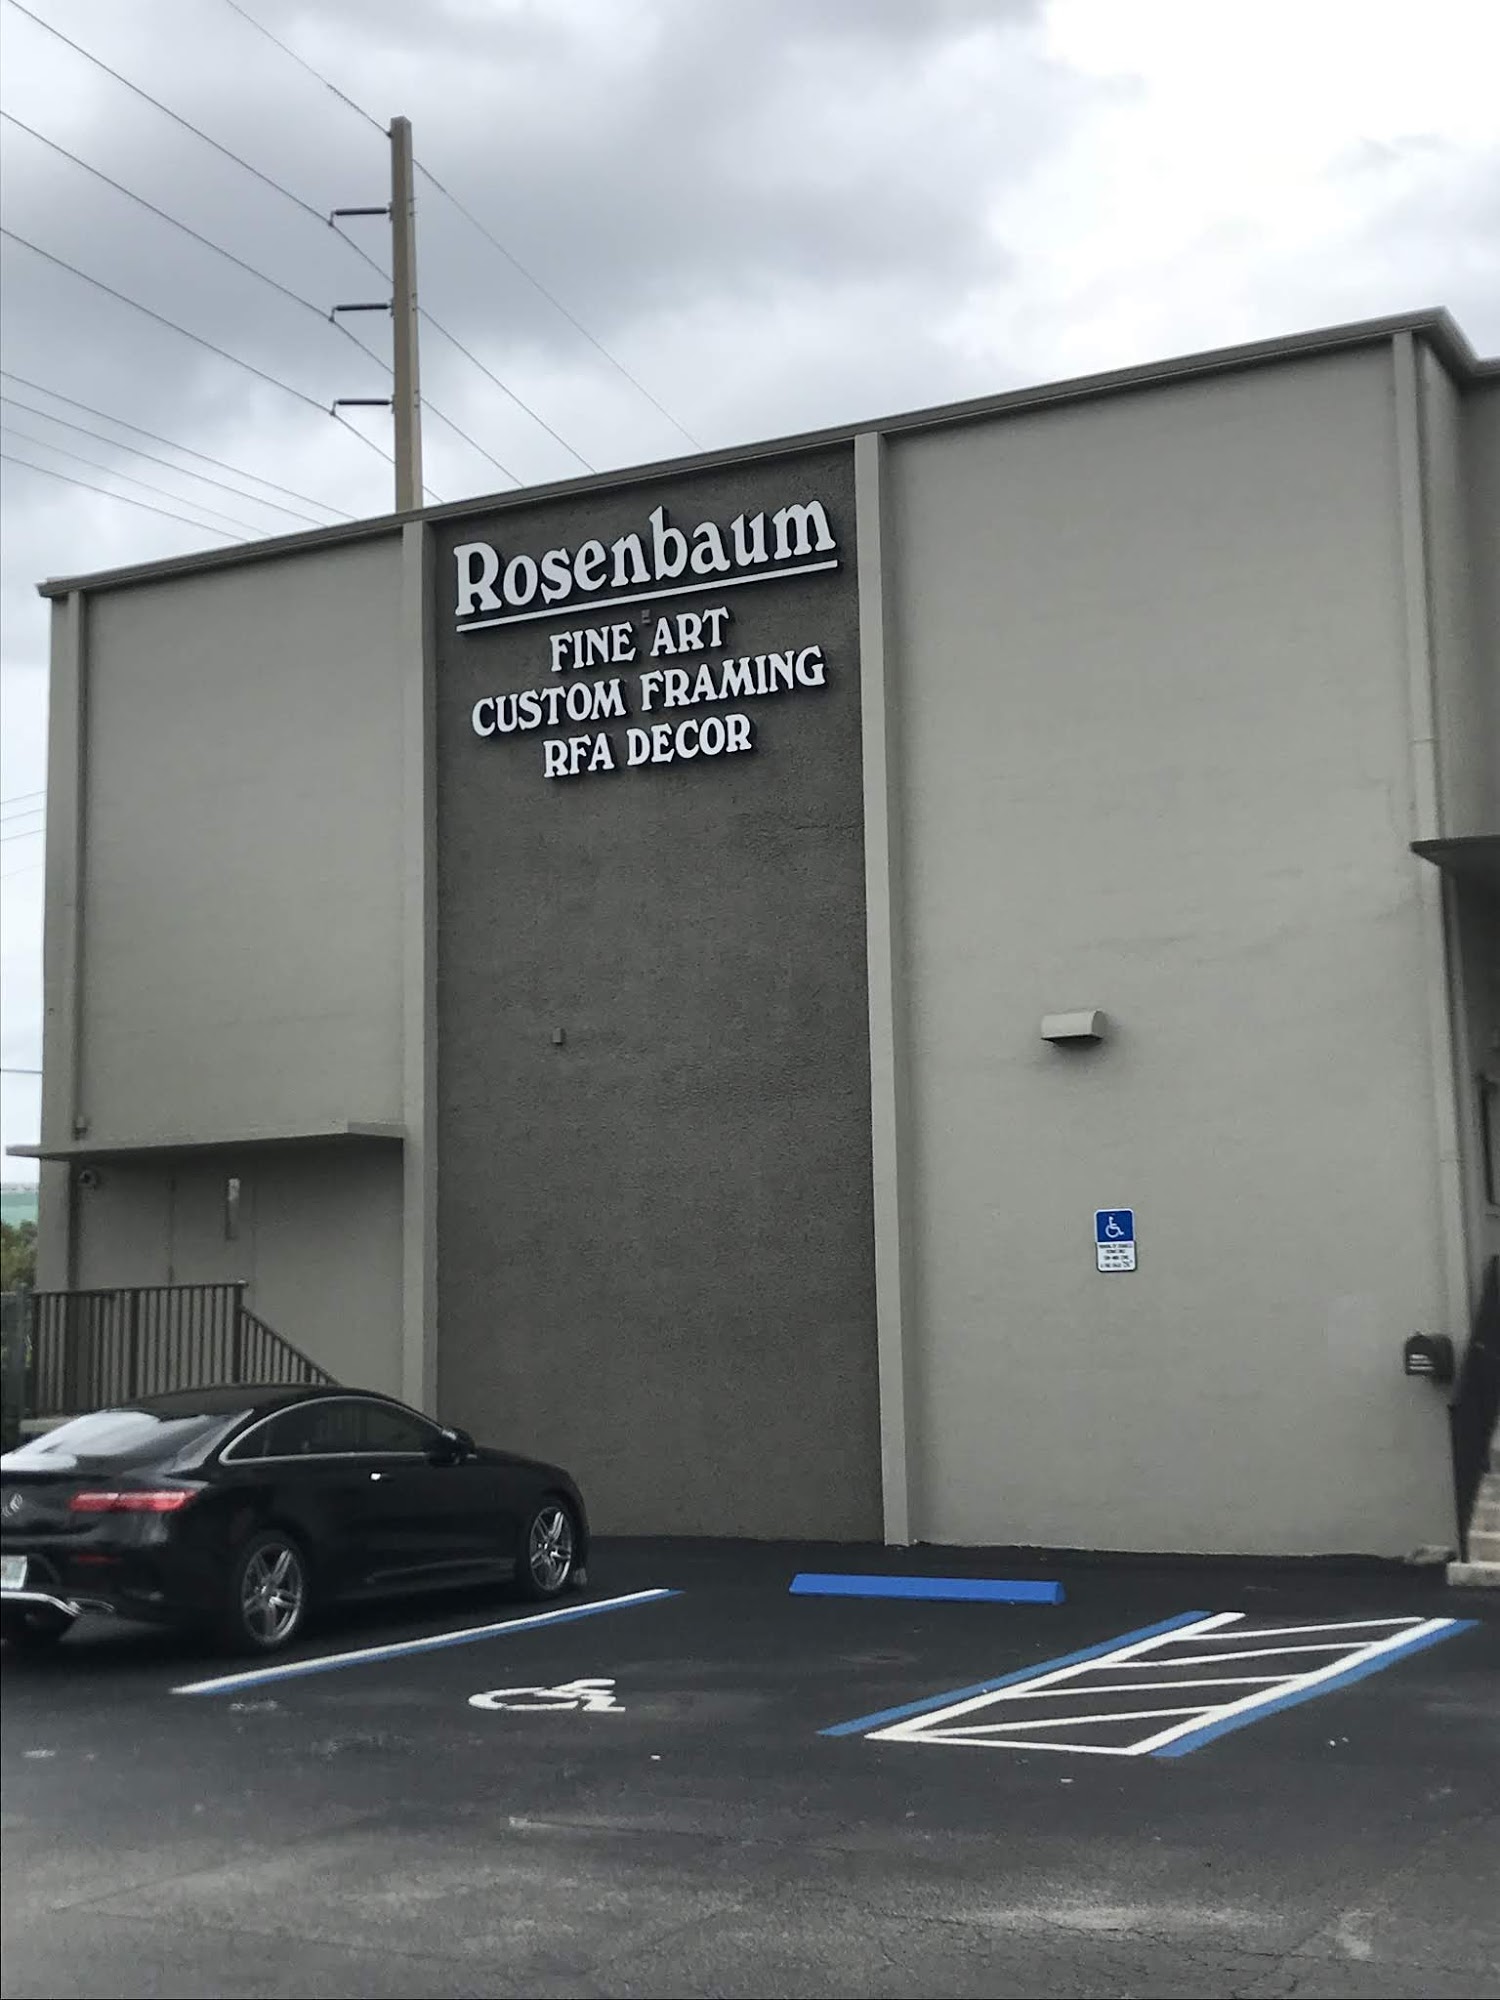 Rosenbaum Framing